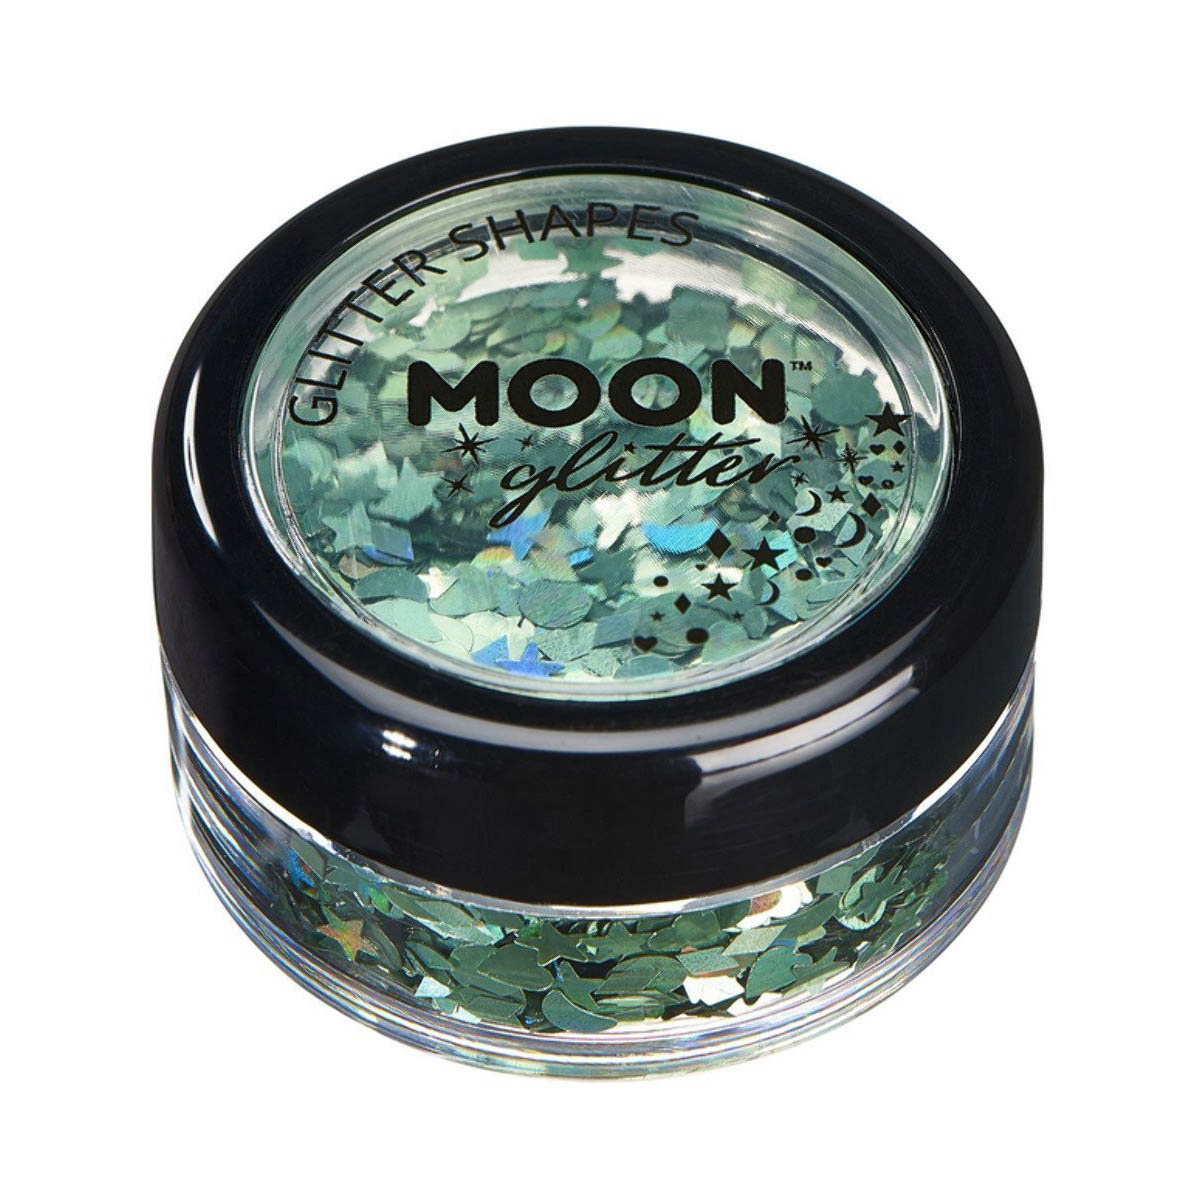 Moon glitter i burk, holografiska former 3g Grön